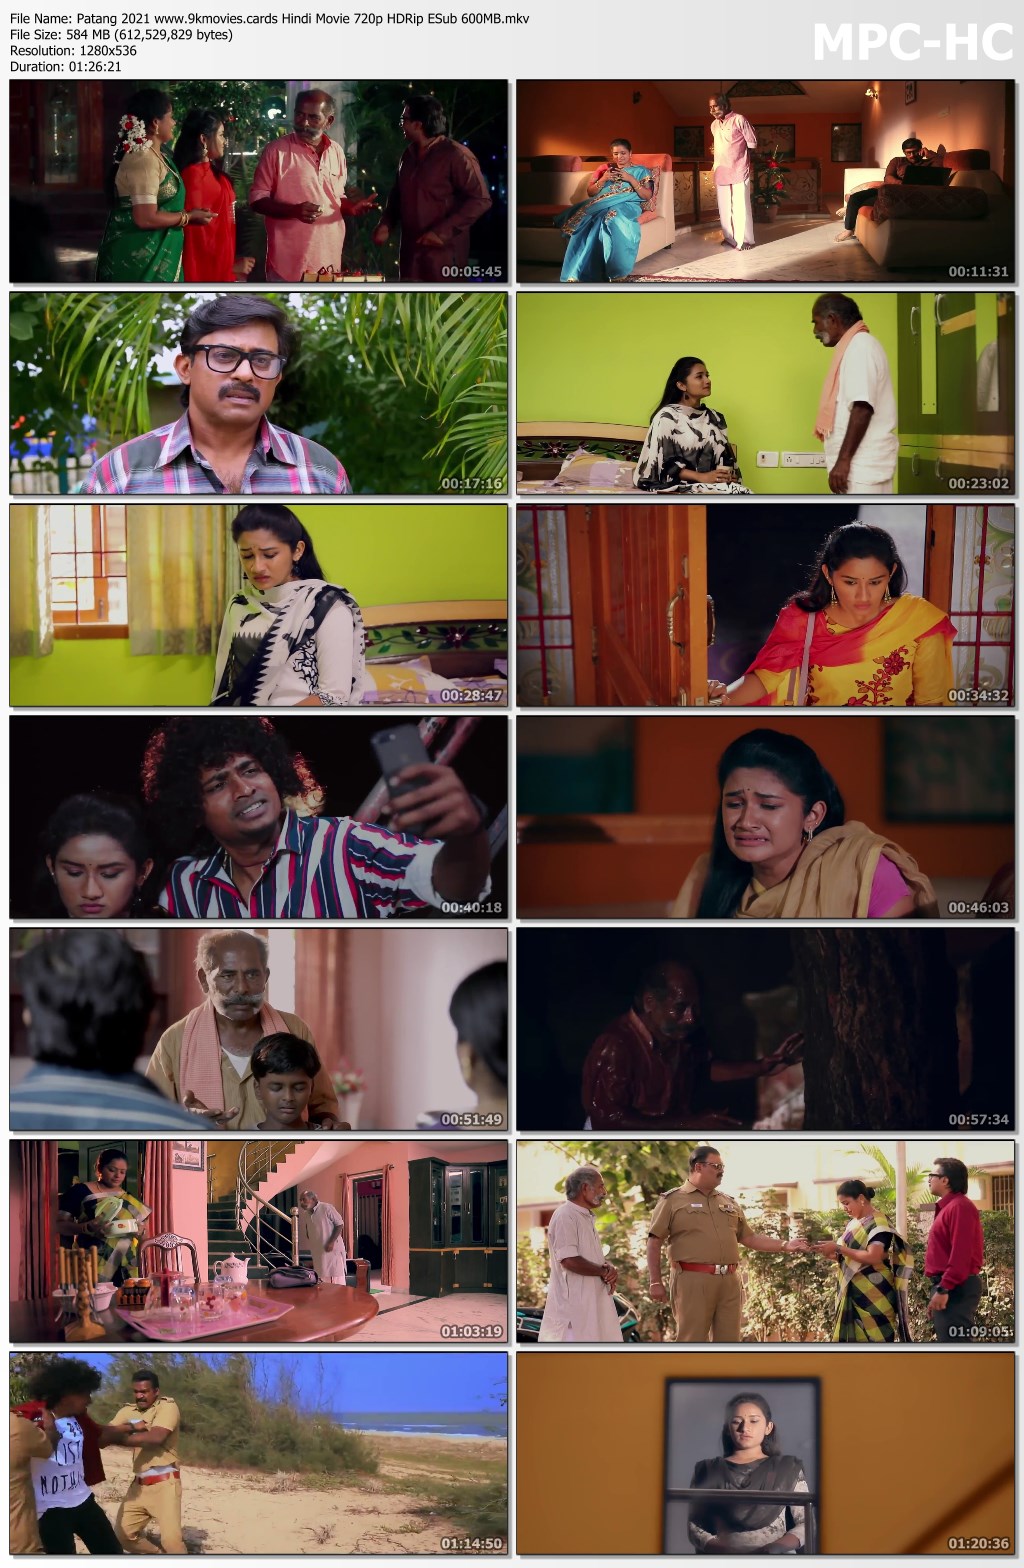 Padmaavat 2018 Hindi www.9xmovies.org 720p BluRay.mkv